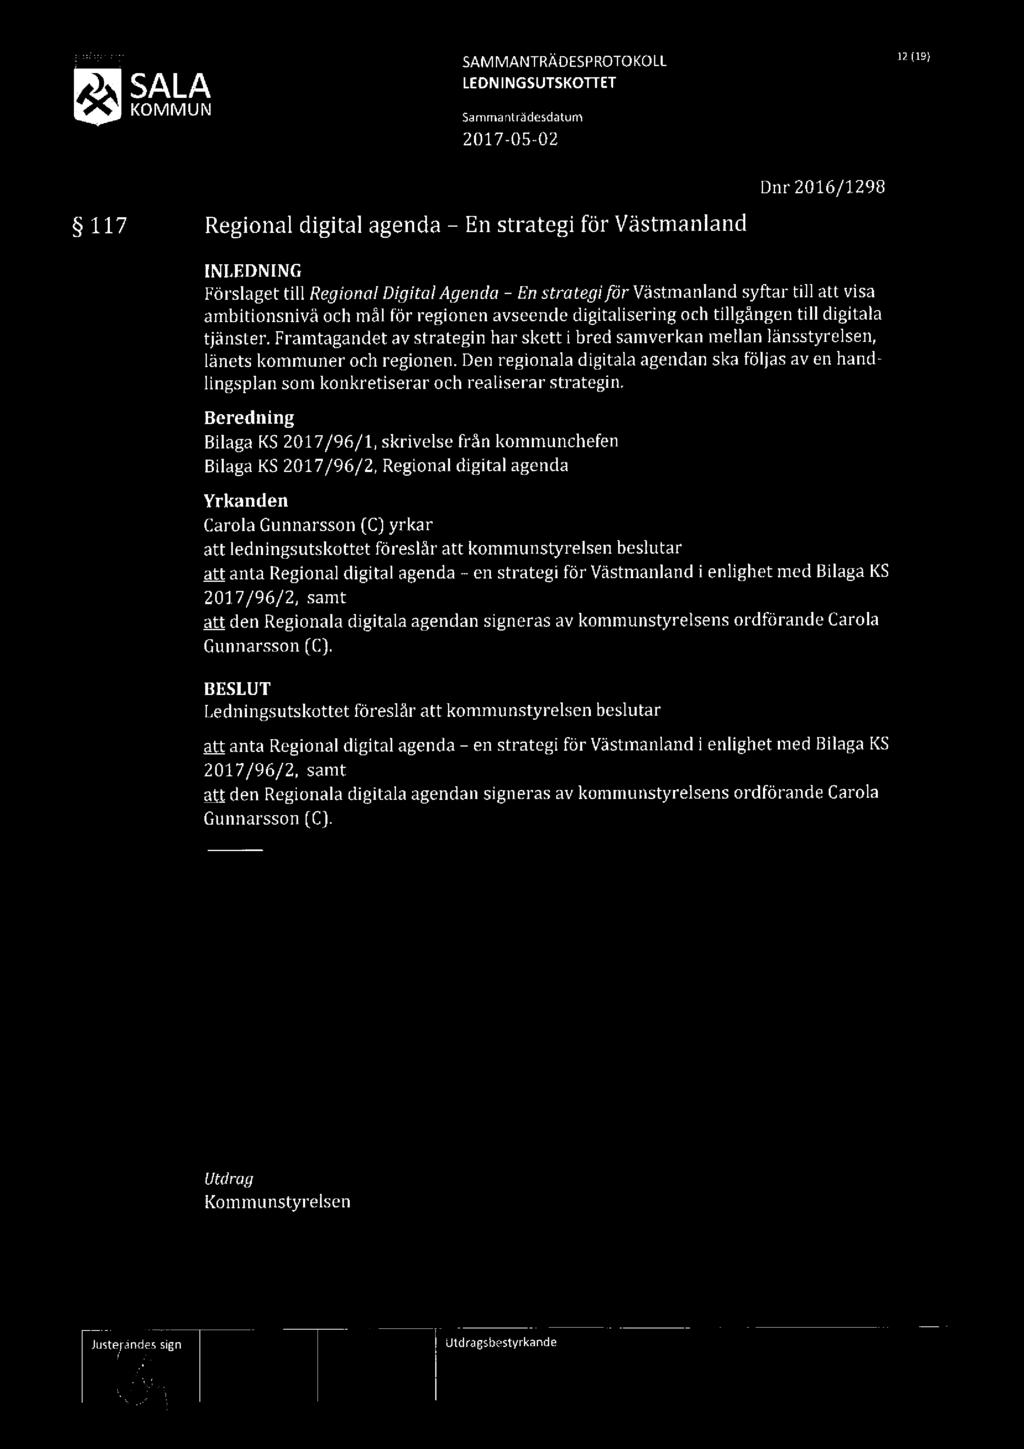 SALA KOMMUN SAMMANTRÄDESPROTOKOLL W19) 117 Regional digital agenda En strategi för Västmanland Dnr 2016/1298 [NLEDNING Förslaget till Regional DigitalAgenda - En strotegiför Västmanland syftar till